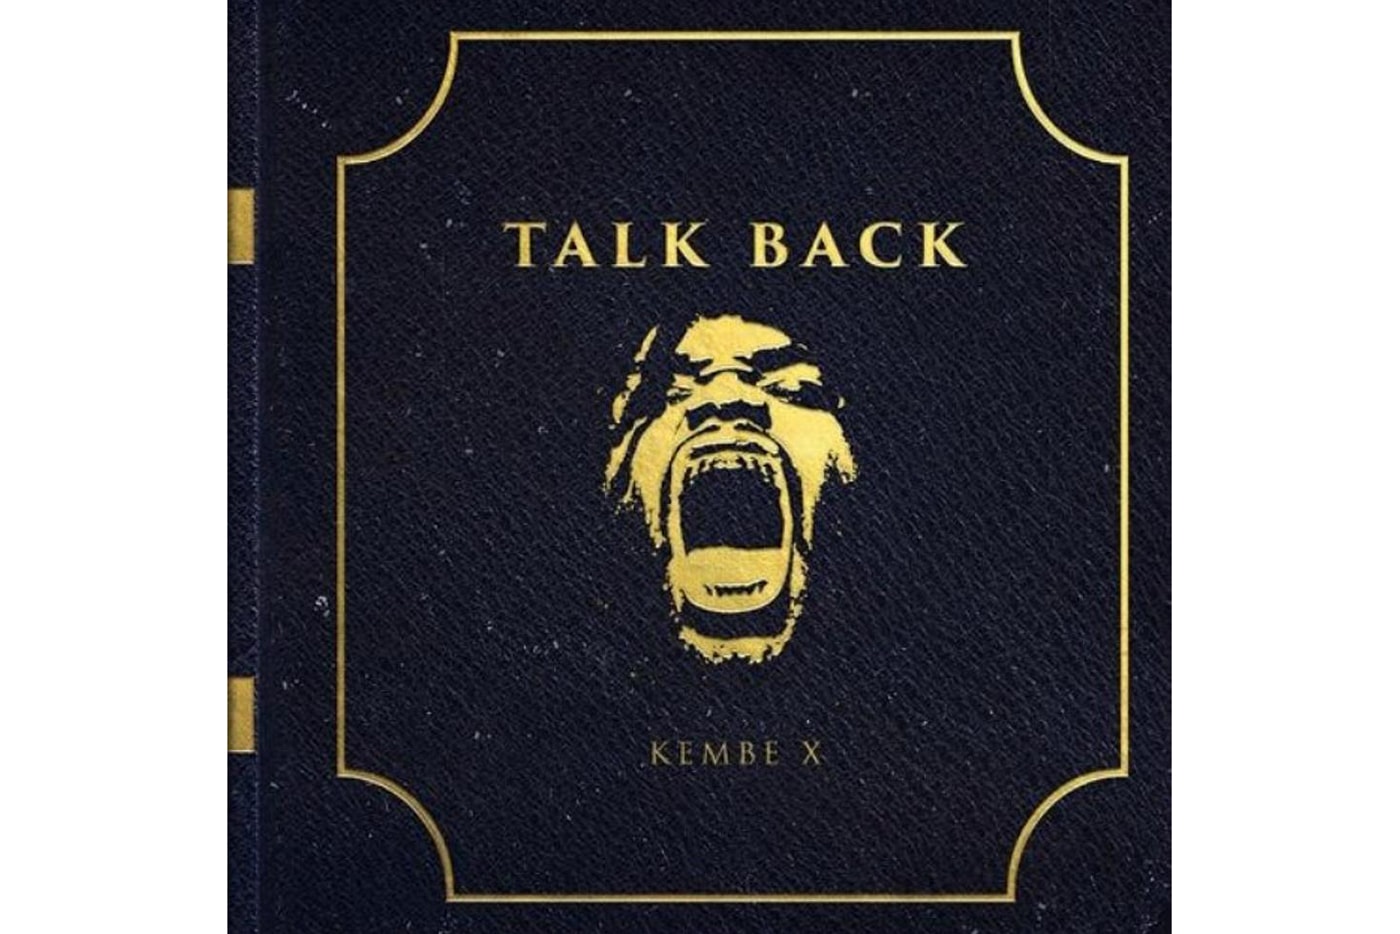 kembe-x-talk-back-album